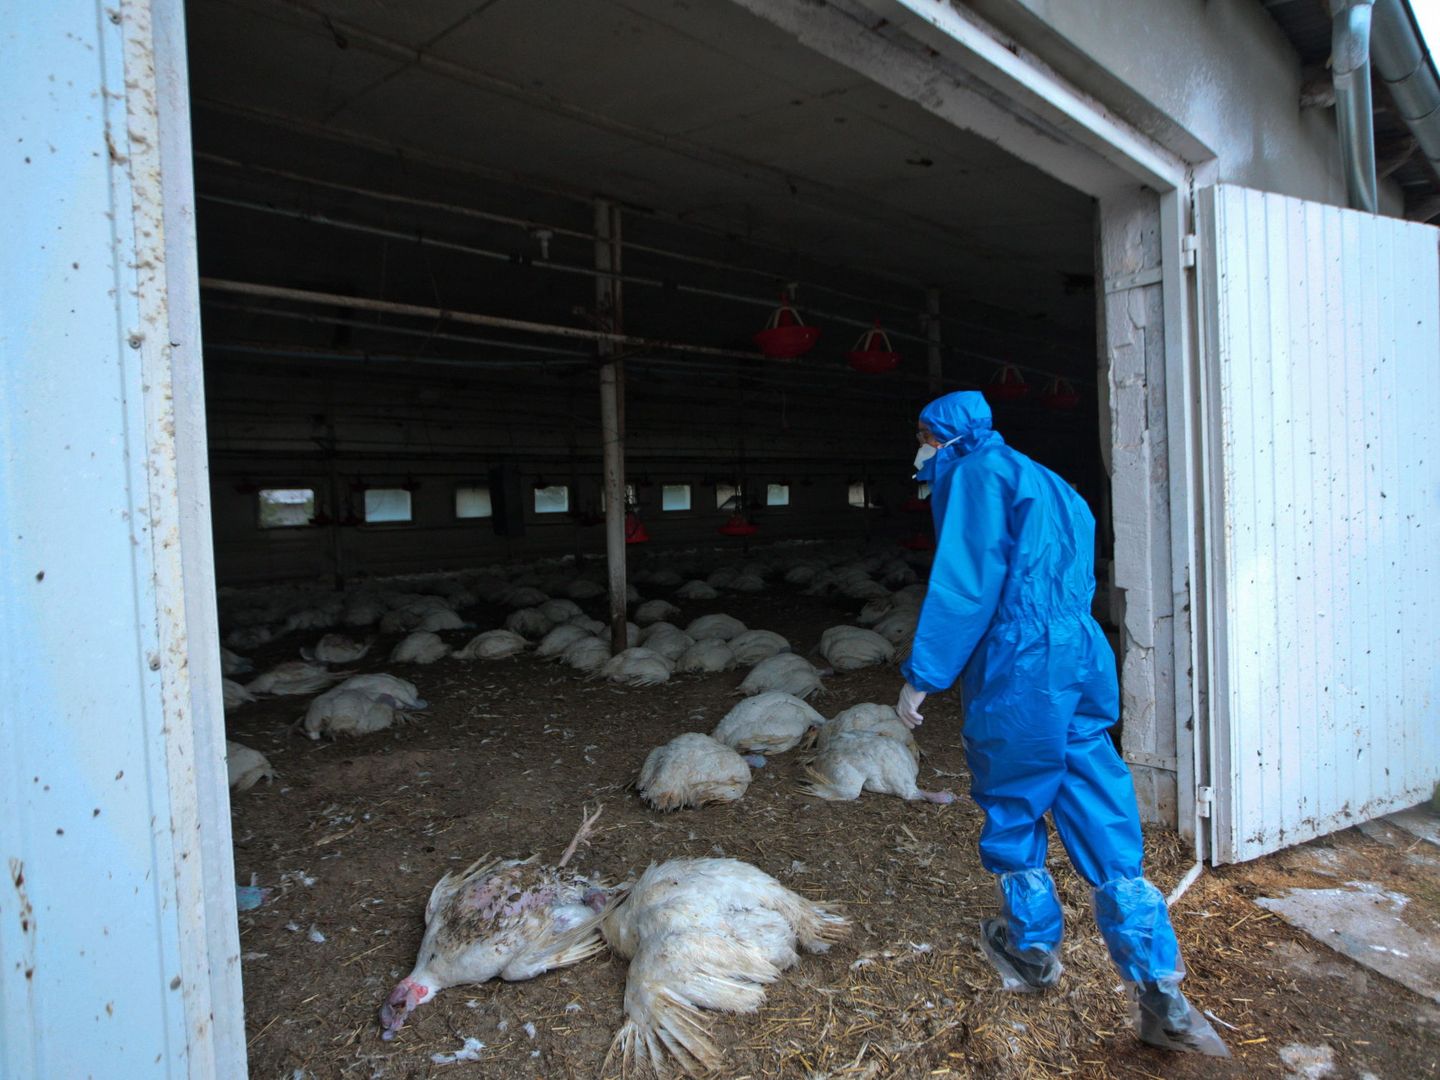 Un empleado entra en una granja de aves afectadas por el H5N8 en Glinik, Polonia. (EPA)